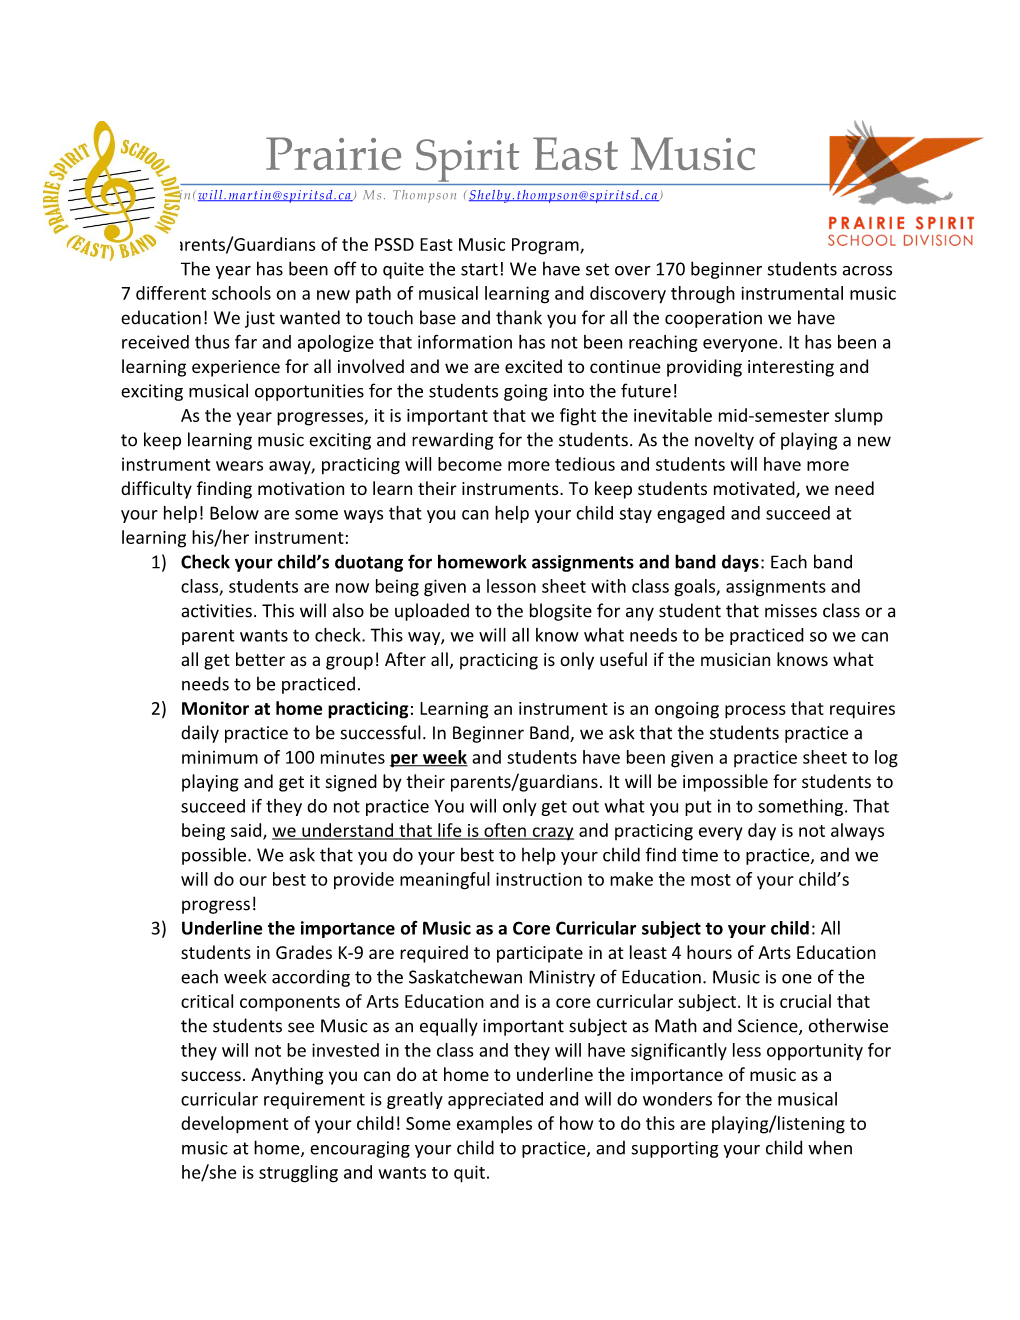 Dear Parents/Guardians of the PSSD East Music Program